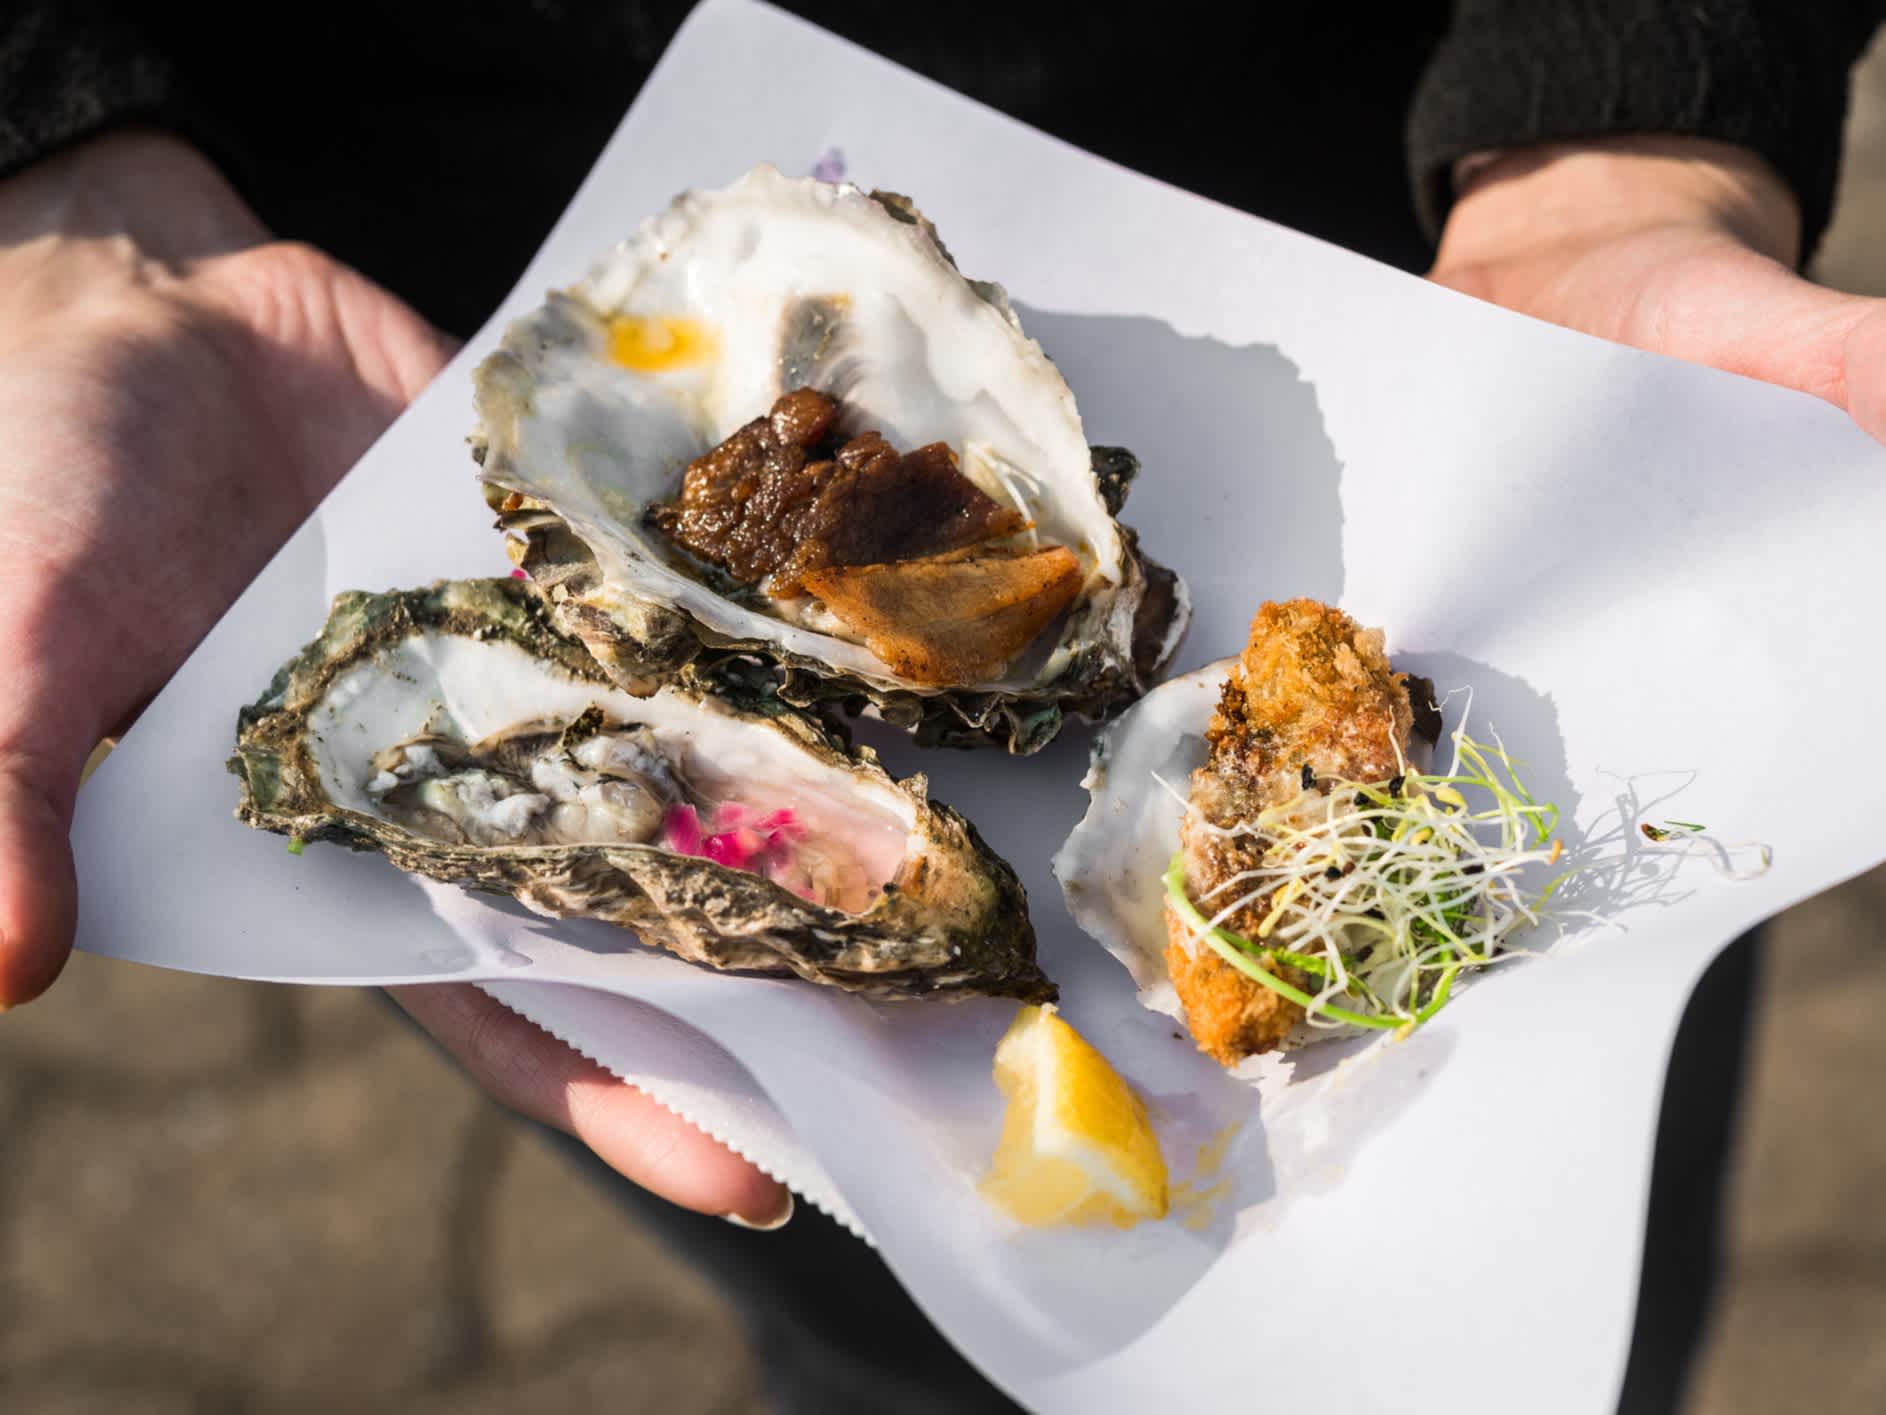 Huîtres gourmandes crues, gratinées et fumées sur un street food market festival